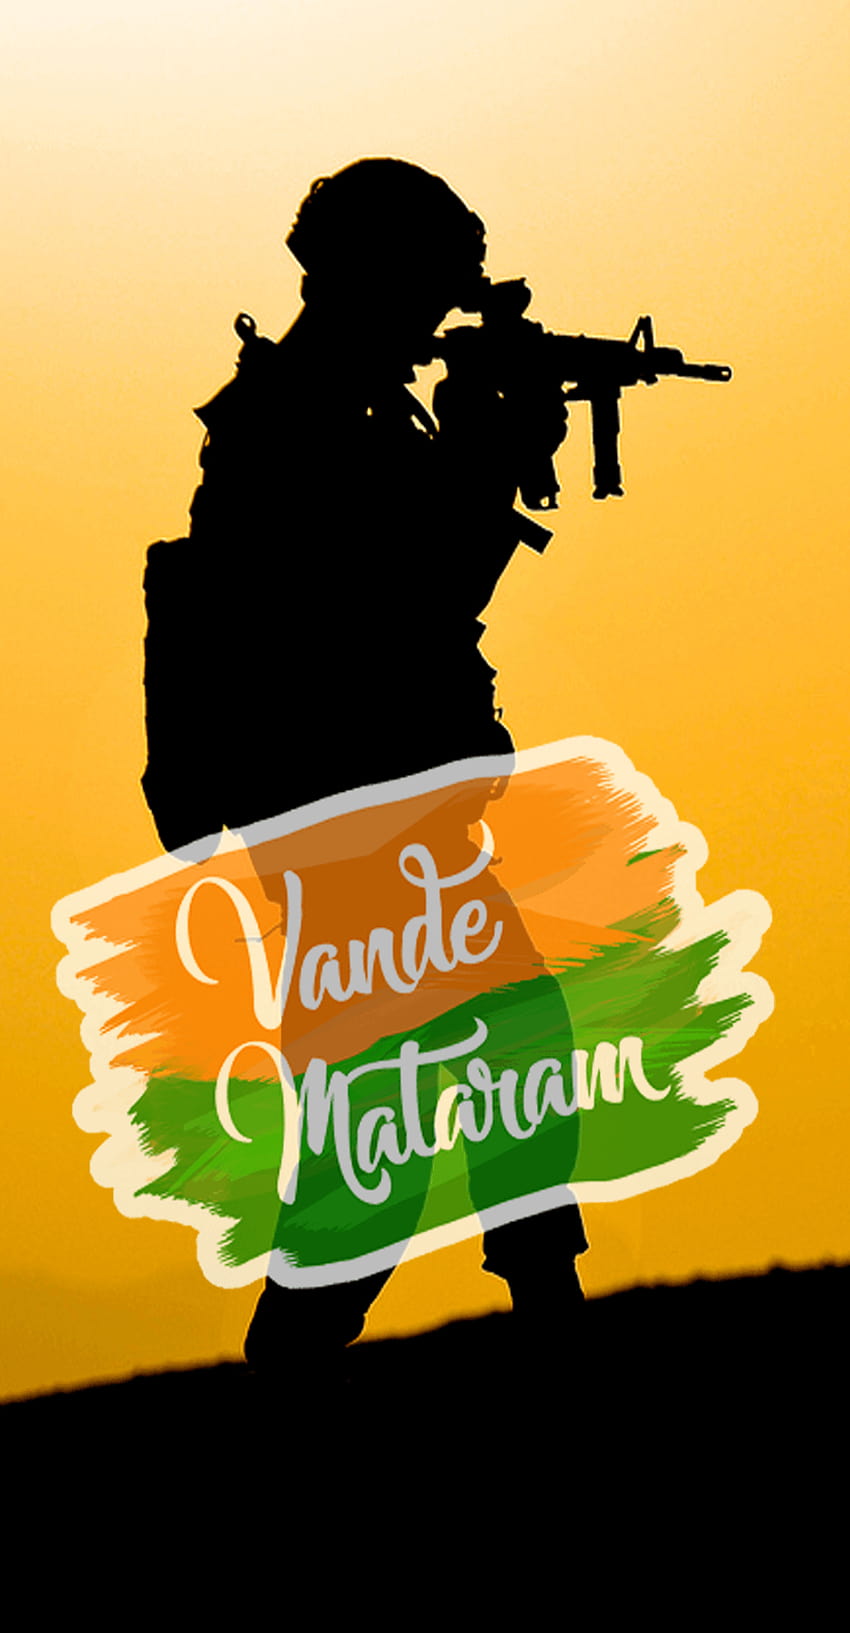 Indian army vector logo template design